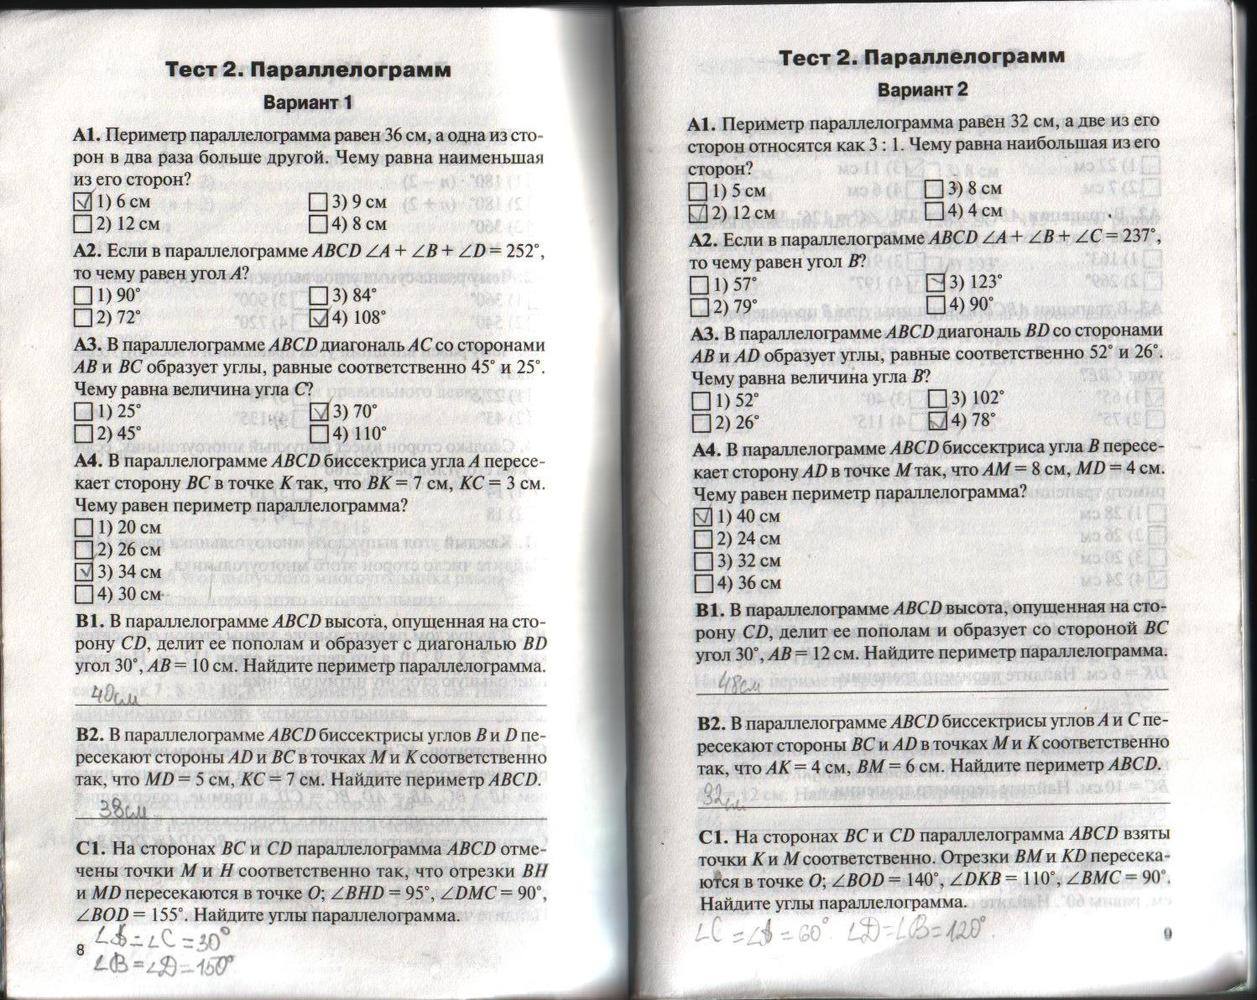 Тесты по отводу часть 1. Геометрия 8 класс контрольно измерительные материалы Гаврилова. ФГОС контрольно-измерительные материалы геометрия 8 класс. Тесты по геометрии 8 класс Гаврилова.